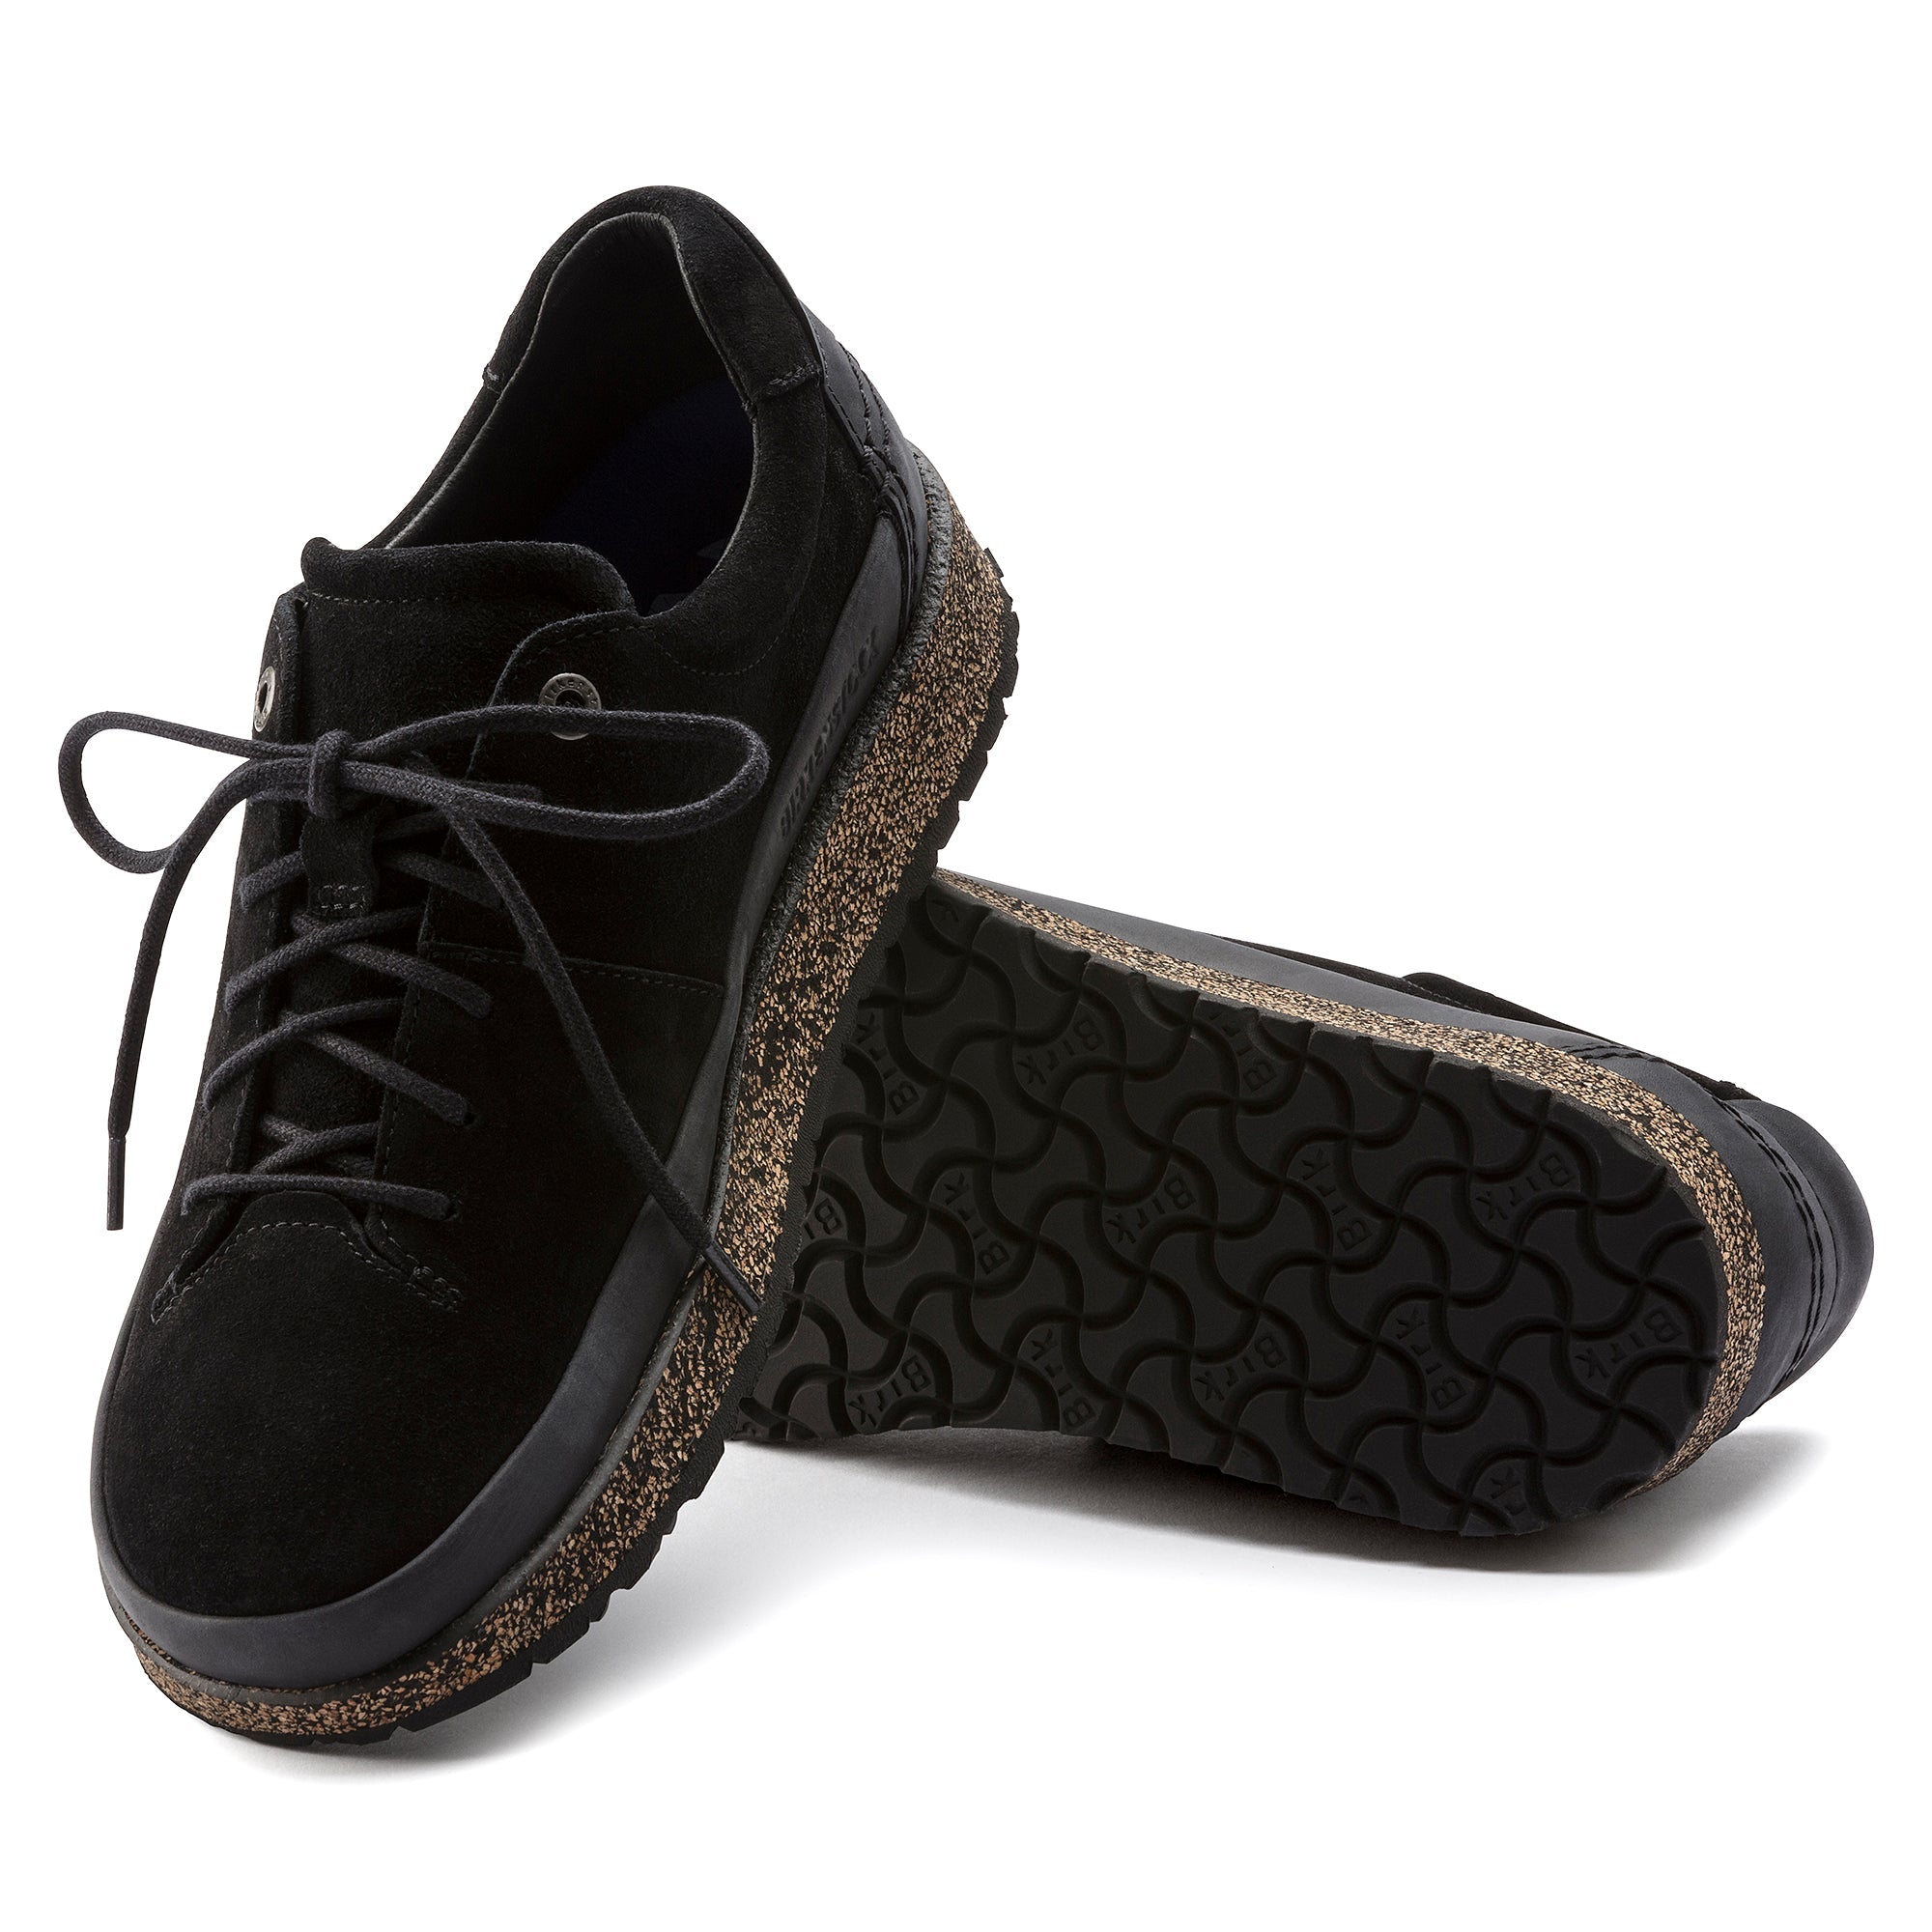 Birkenstock Honnef Low Suede Leather Sneaker Women's